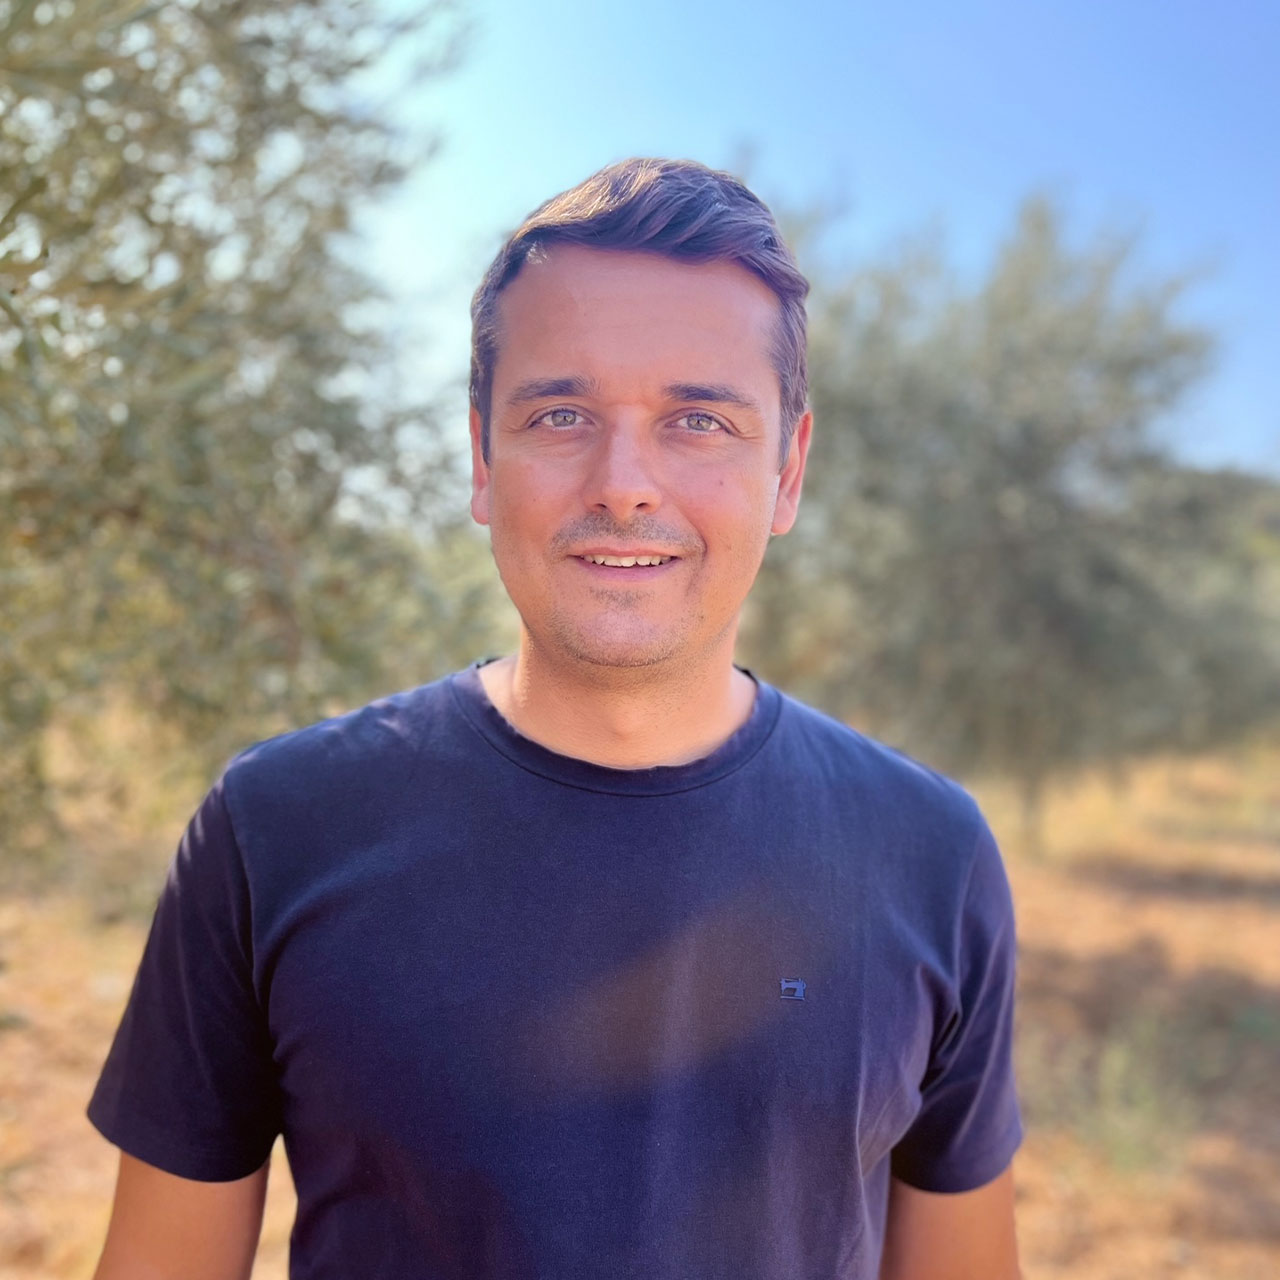 Ein Portraitfoto von Laki, aufgenommen vor einem Olivenbaum im Sonnenschein.